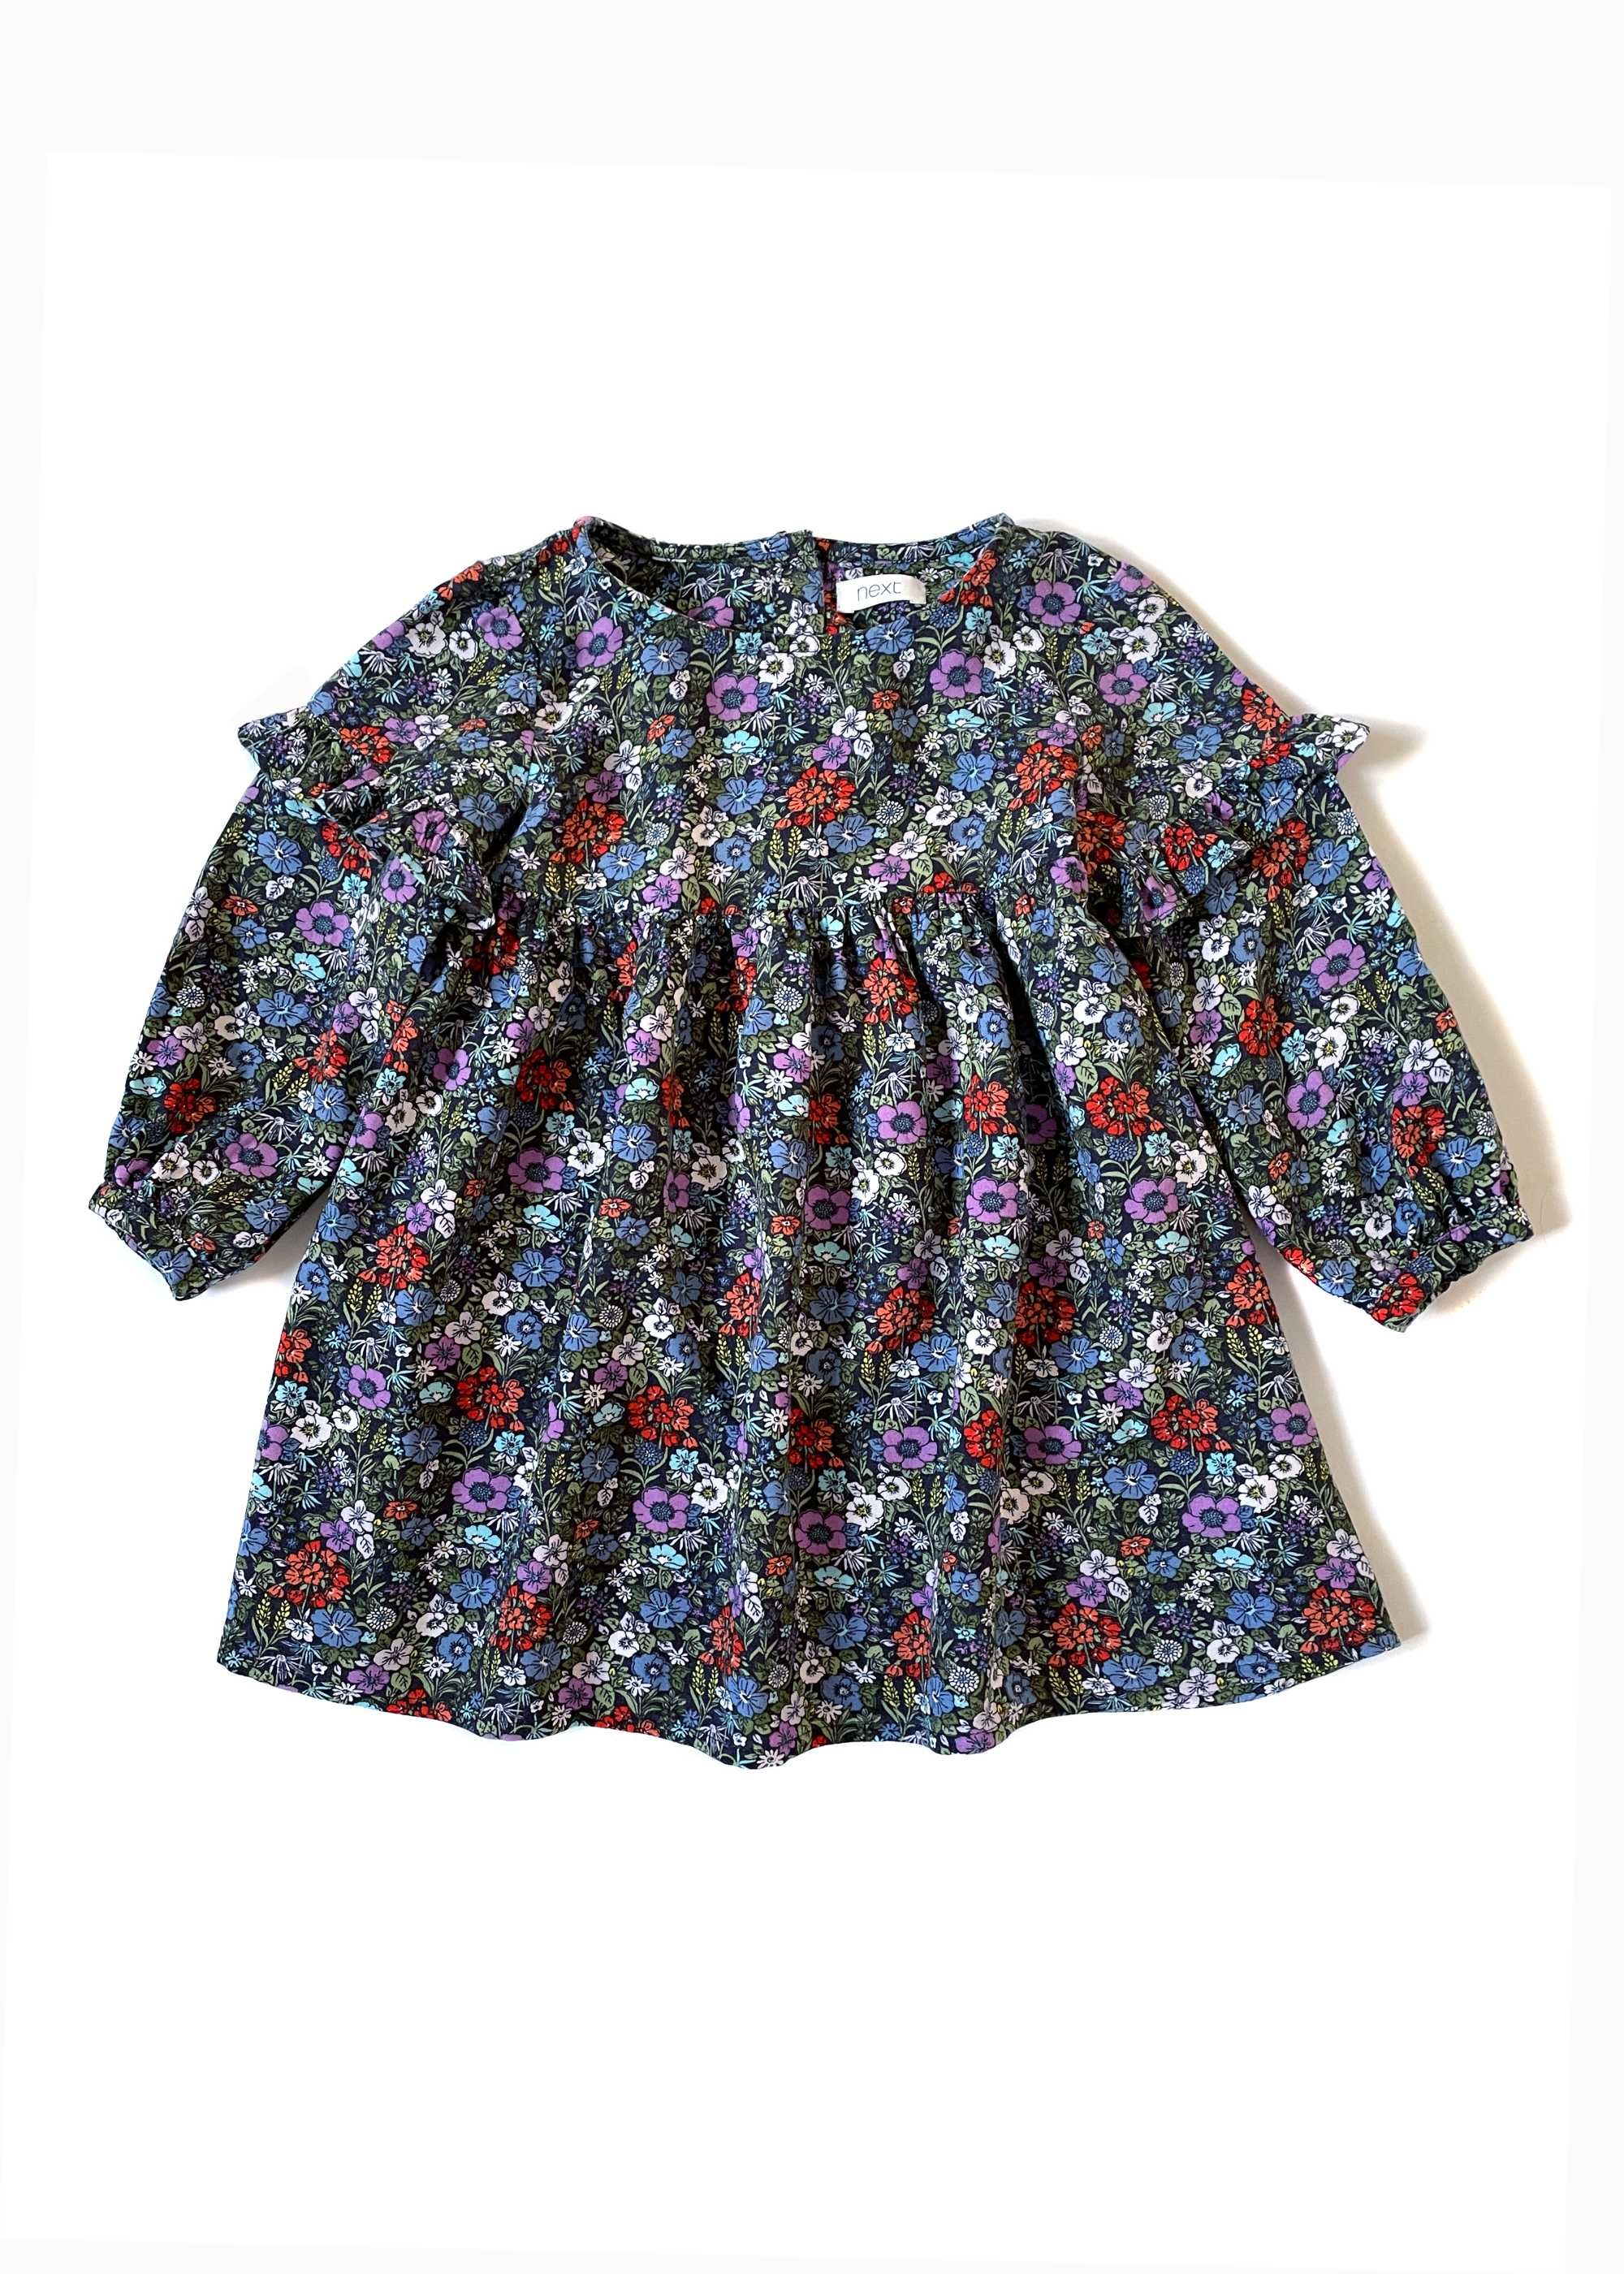 Прелестное цветочное платье Next для девочки 12-18 месяцев, 86 см